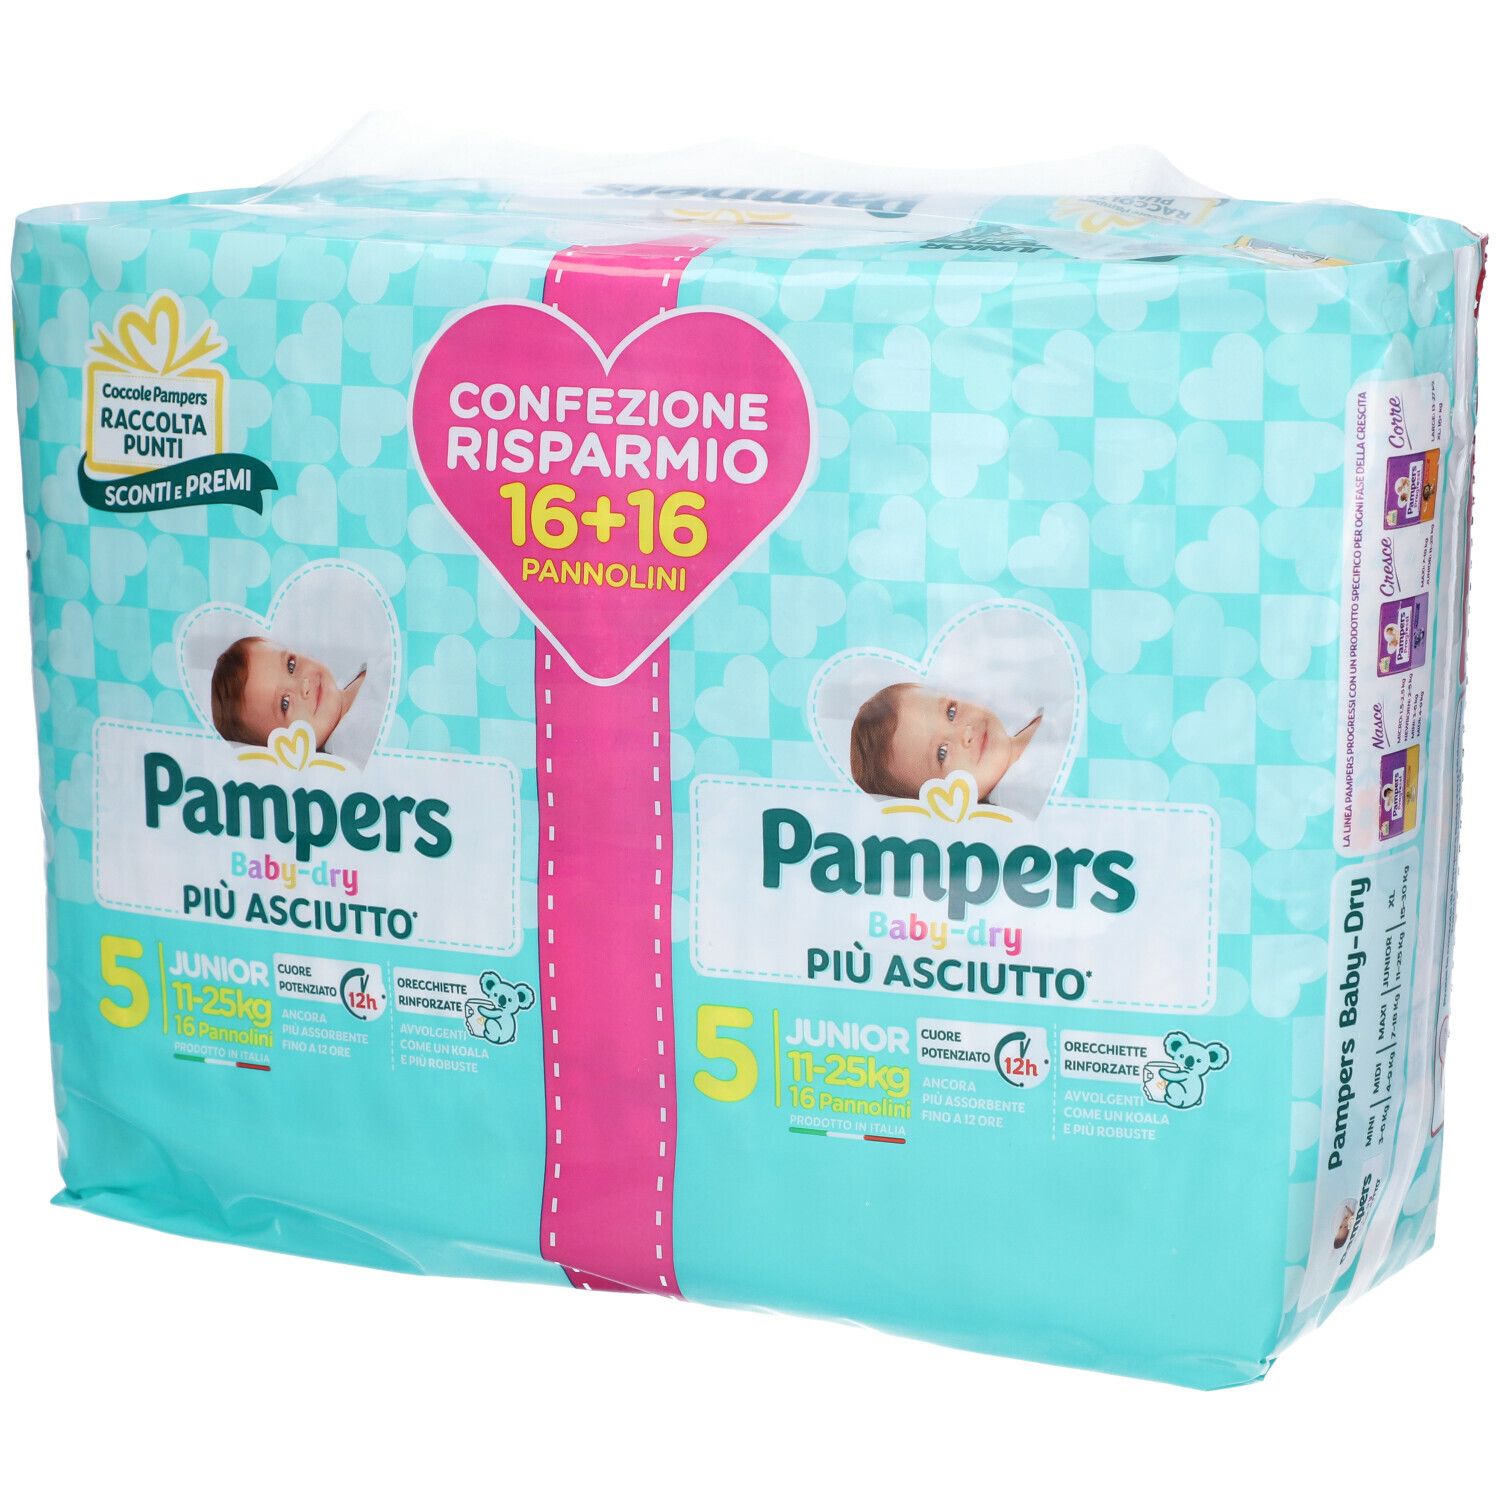 Pampers Baby-Dry Più Asciutto 5 Junior 11-25 kg Confezione Risparmio